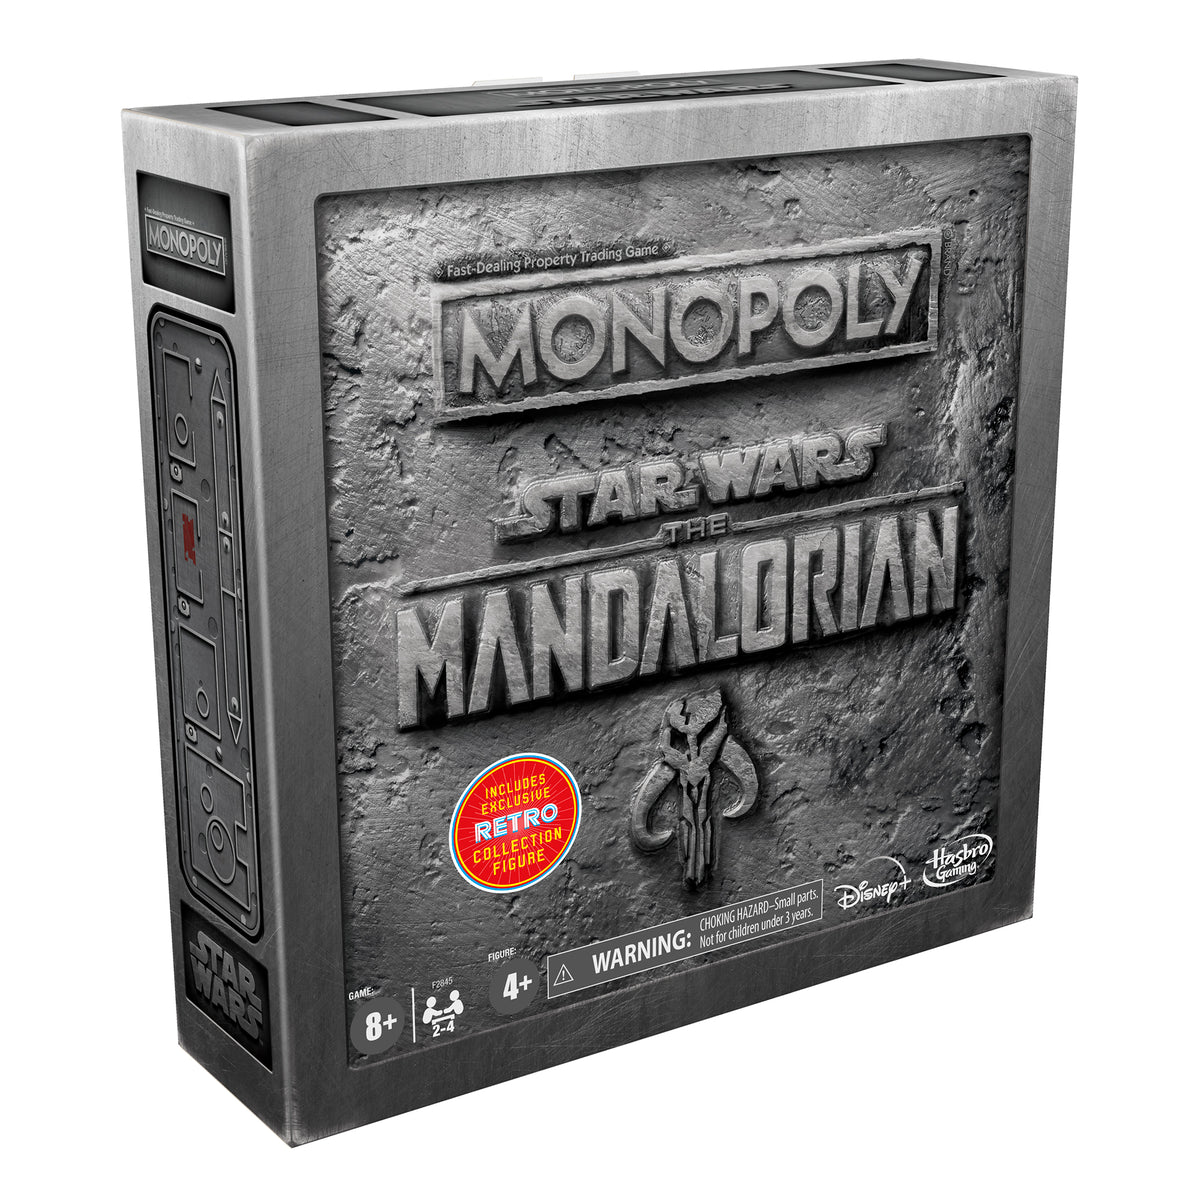 MONOPOLY CLASSIQUE - Monopoly